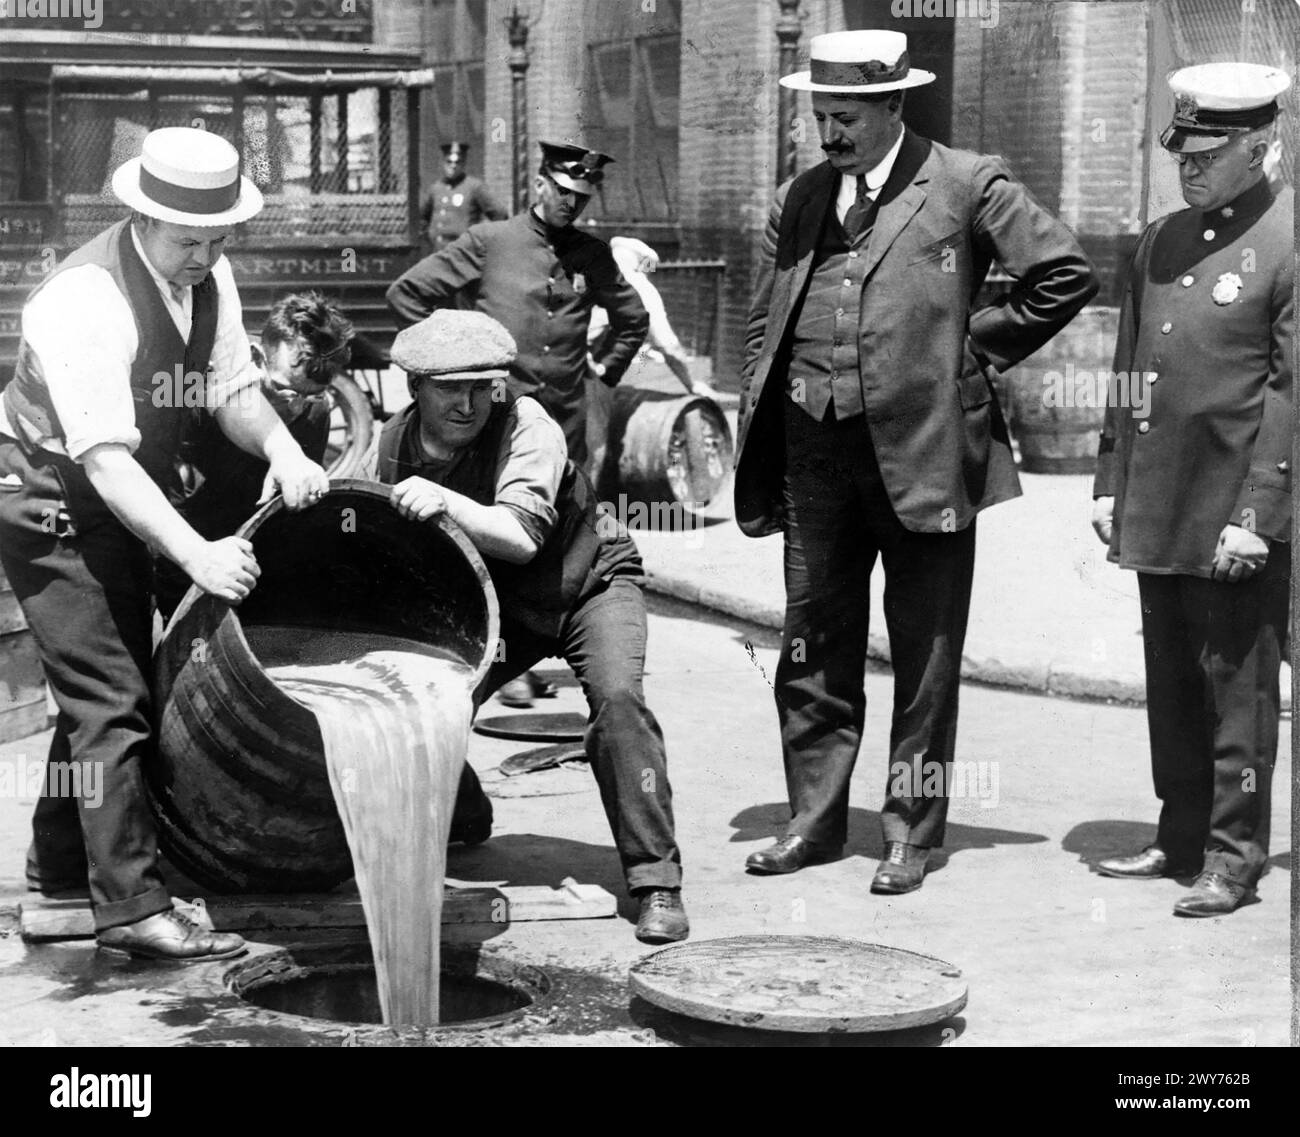 VERBOT IN DEN USA. New York City Deputy Police Commissioner John Leach beobachtet seine Agenten, wie sie Alkohol in einen Abfluss gießen, nach einer Razzia um 1925 Stockfoto